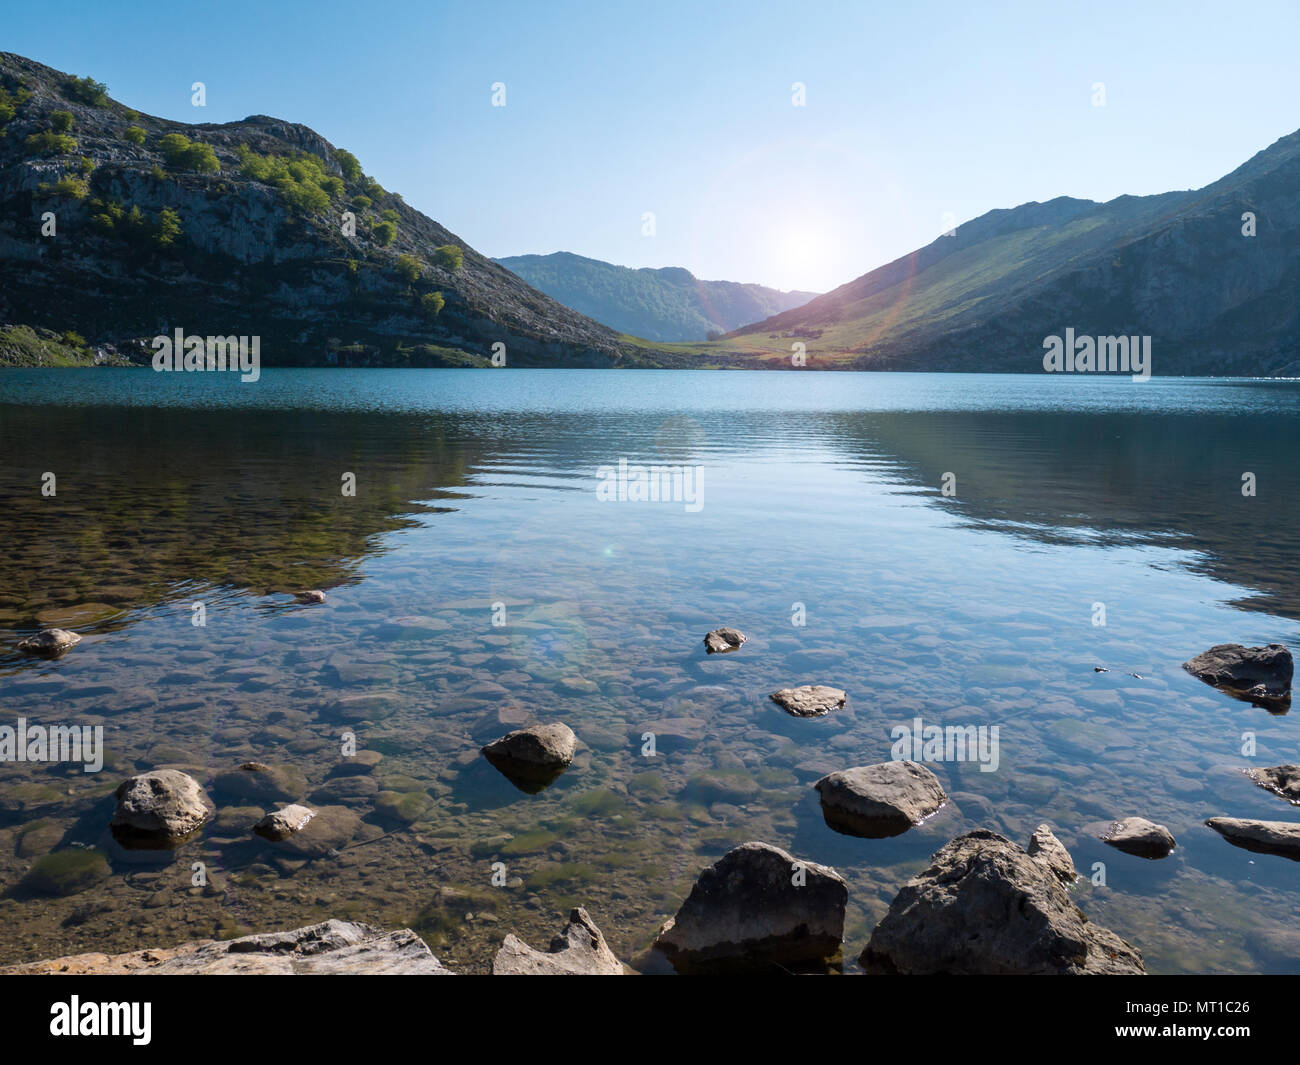 Enol lago alpino de montaña, cerca de Covadonga. Lago en el parque nacional de Picos de Europa, Asturias, España. Foto de stock